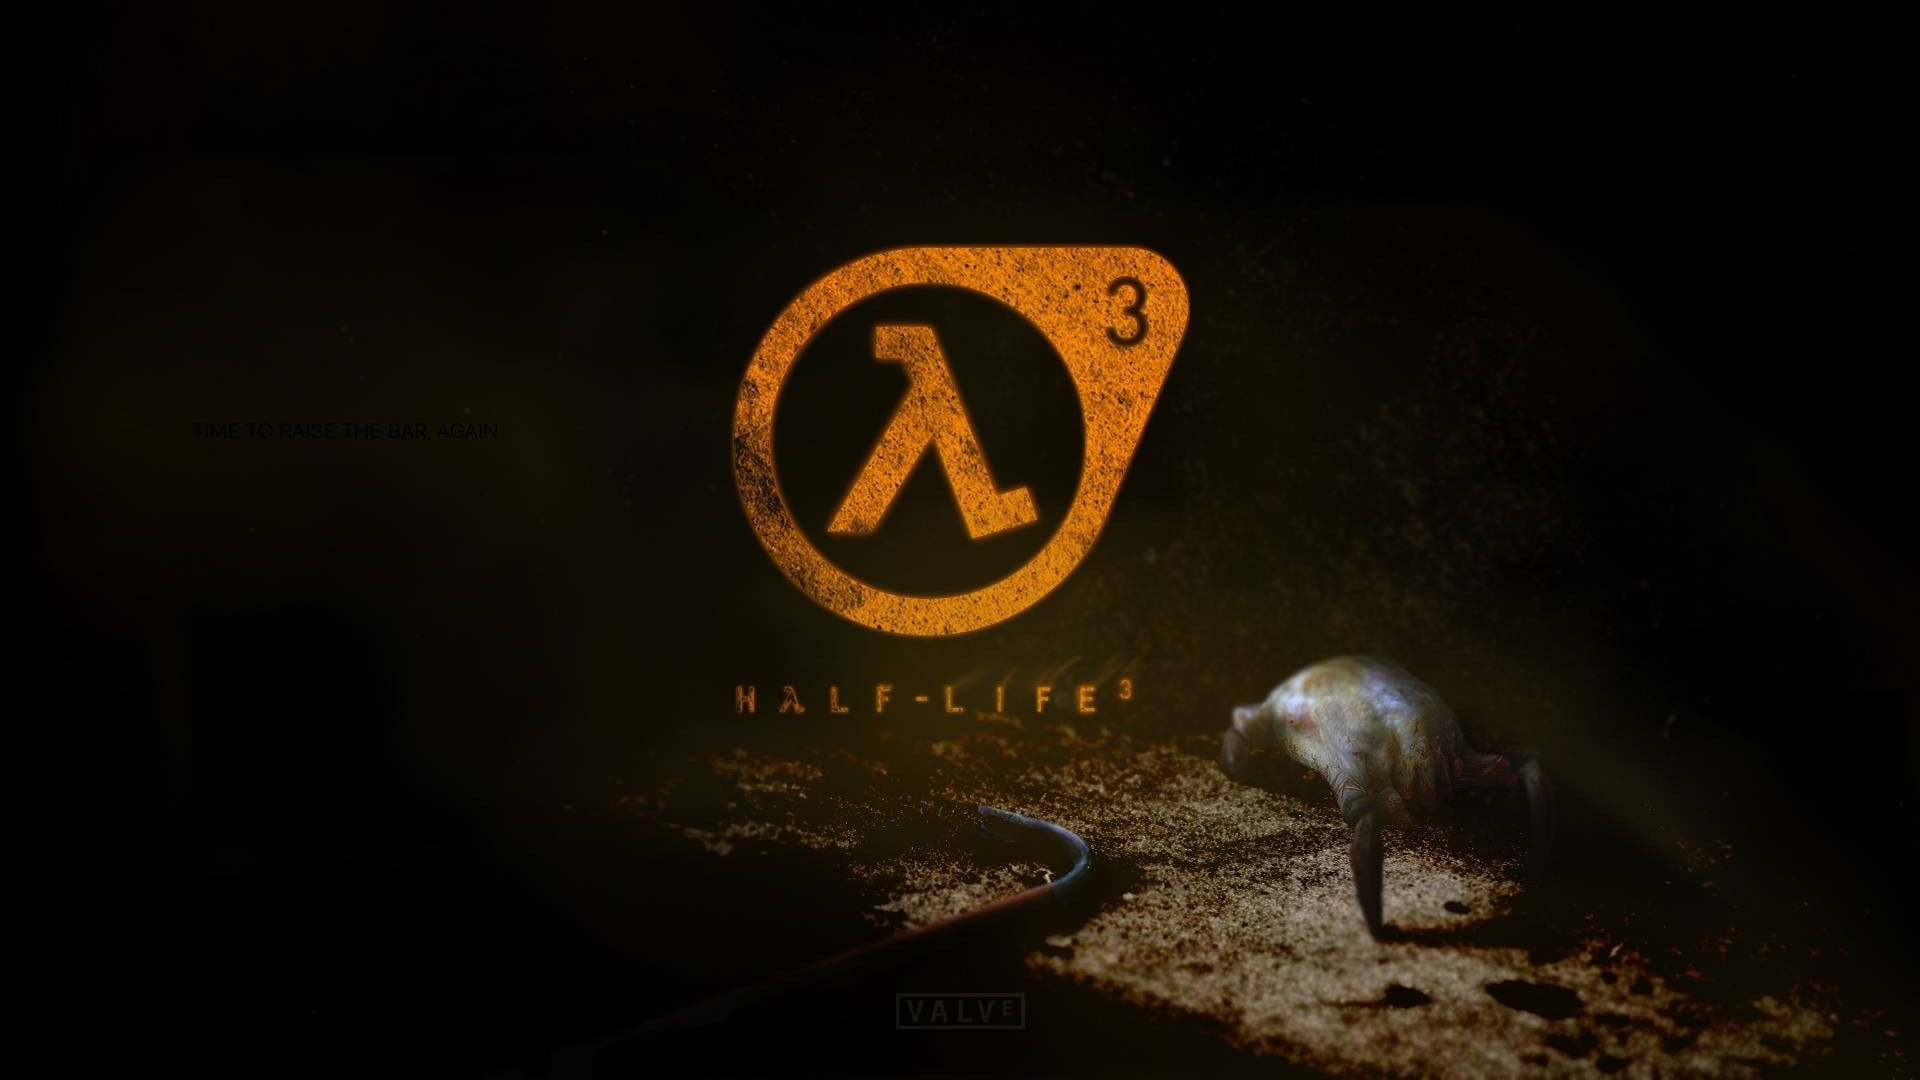 Half-life Logo On Dark Wooden Room